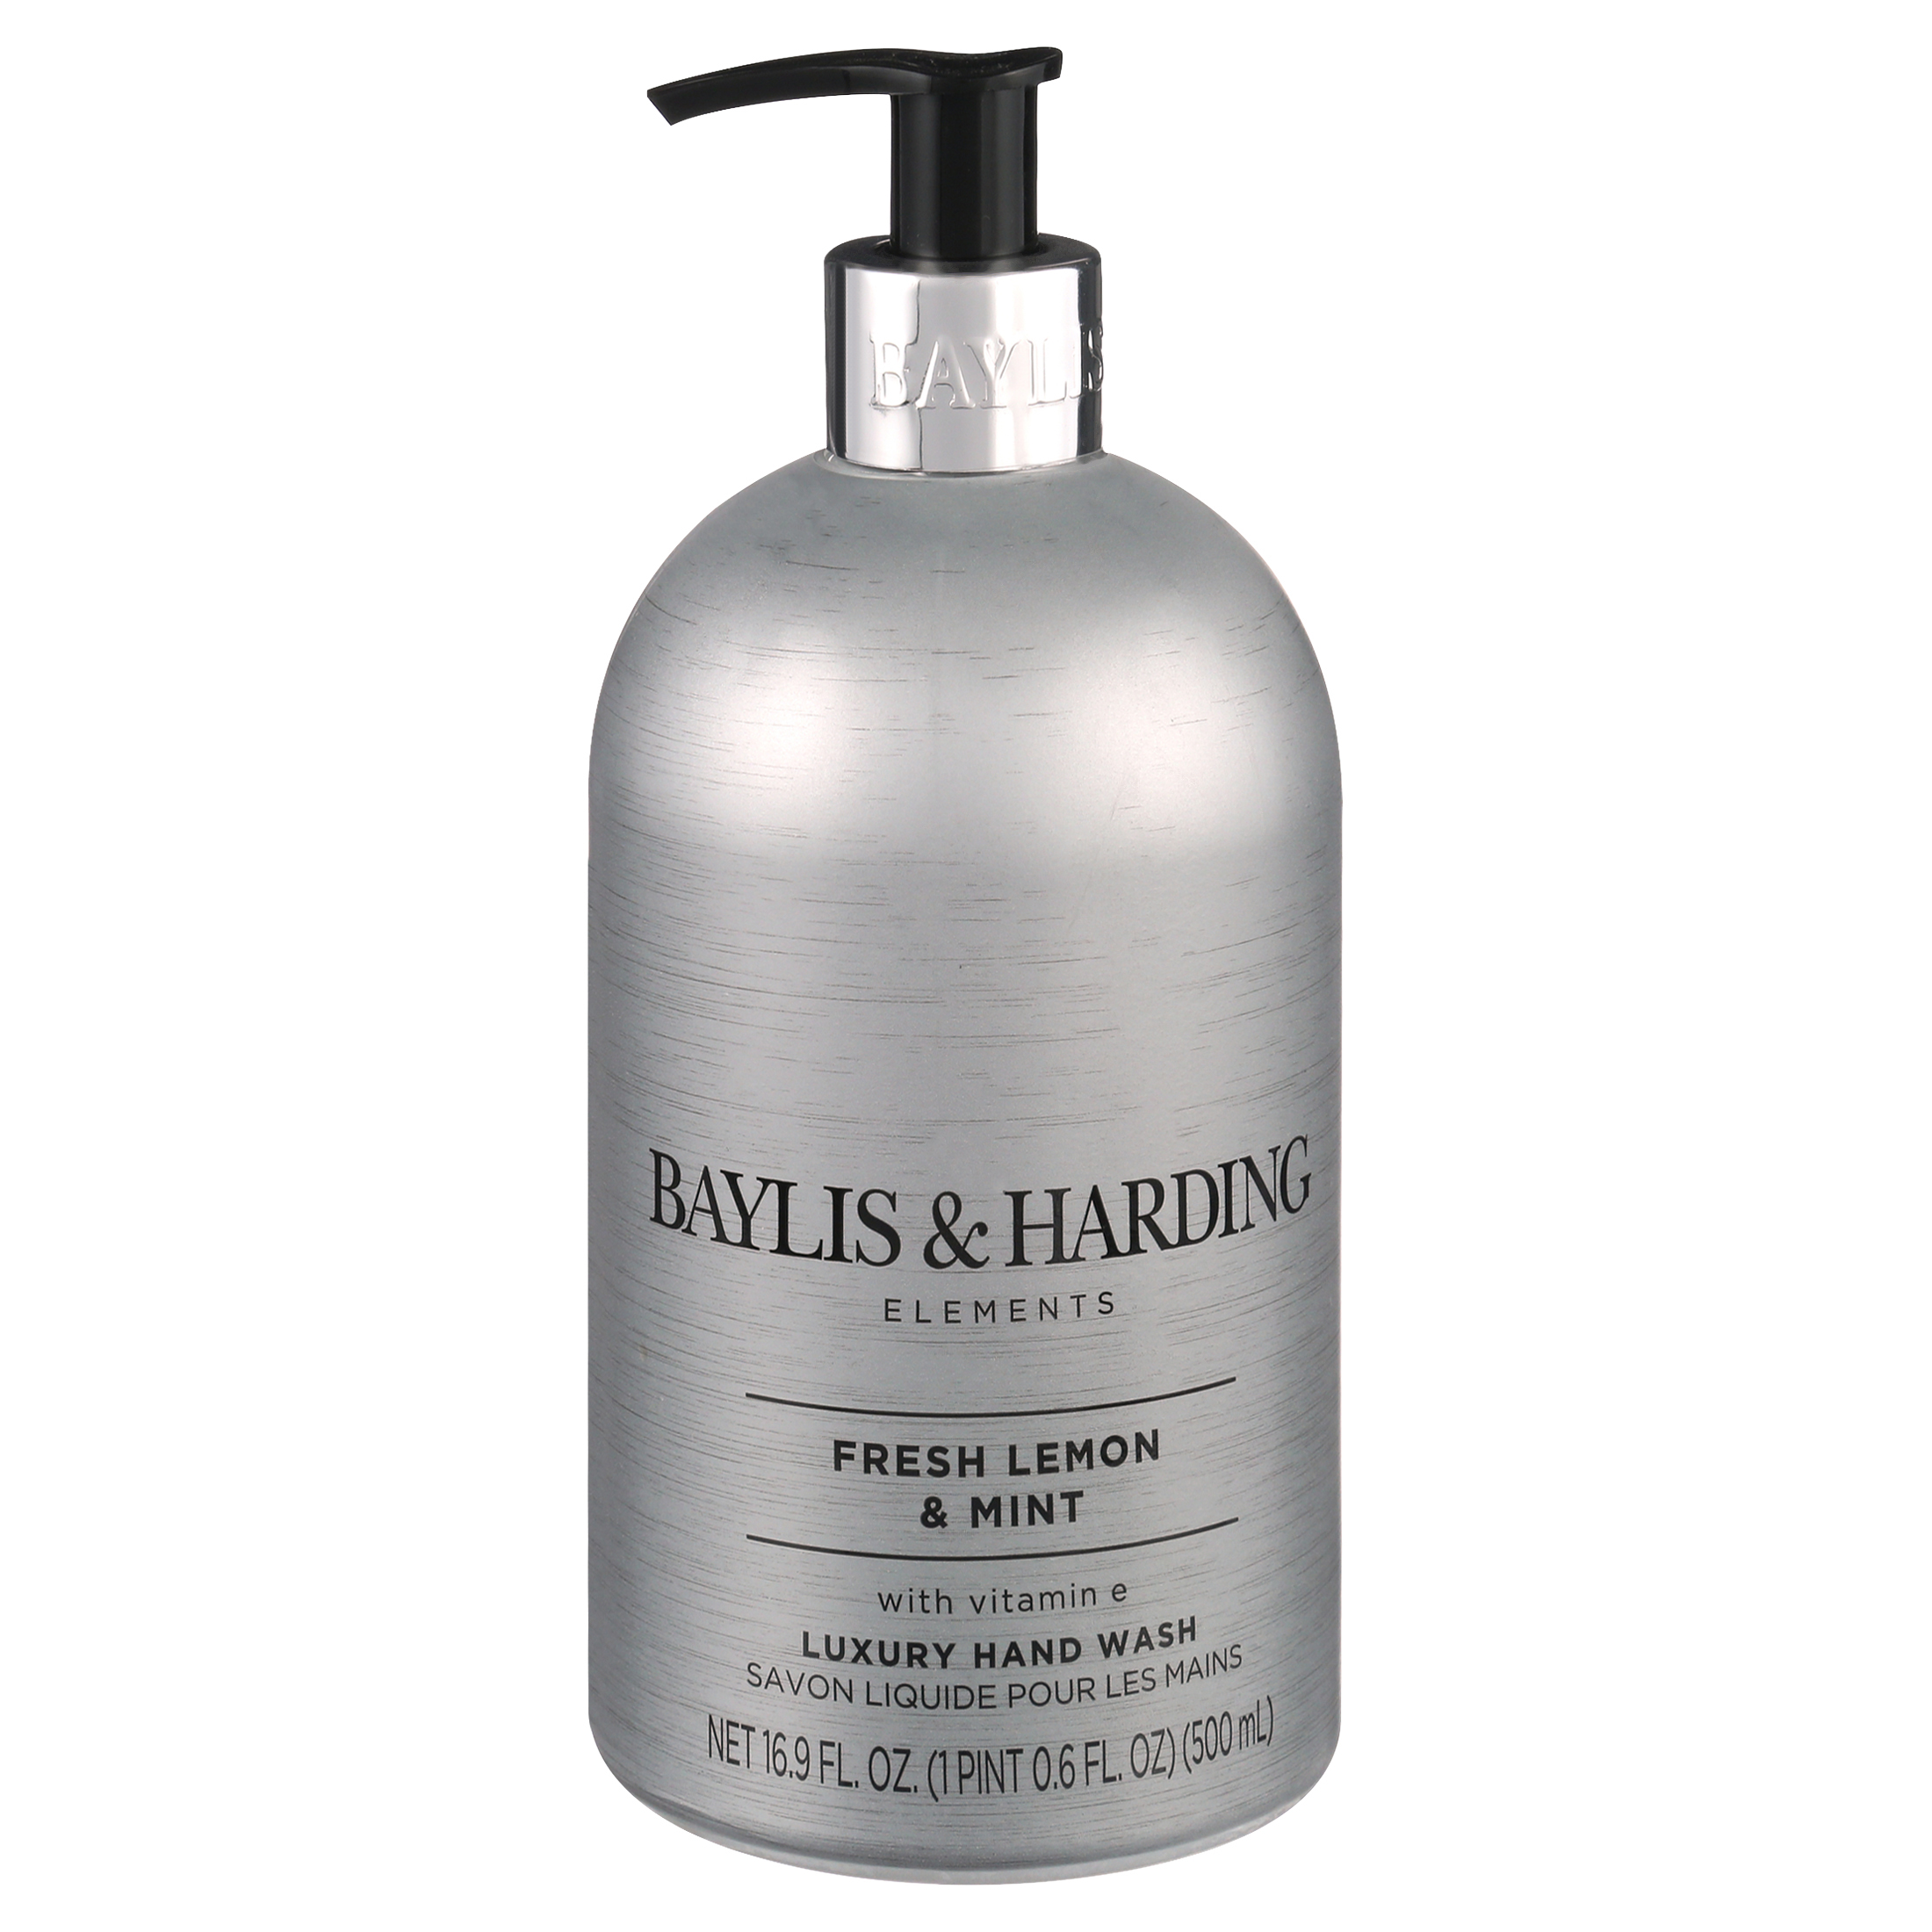 Baylis and Harding Elements 500ml Hand Soap, Lemon & Mint - image 3 of 7